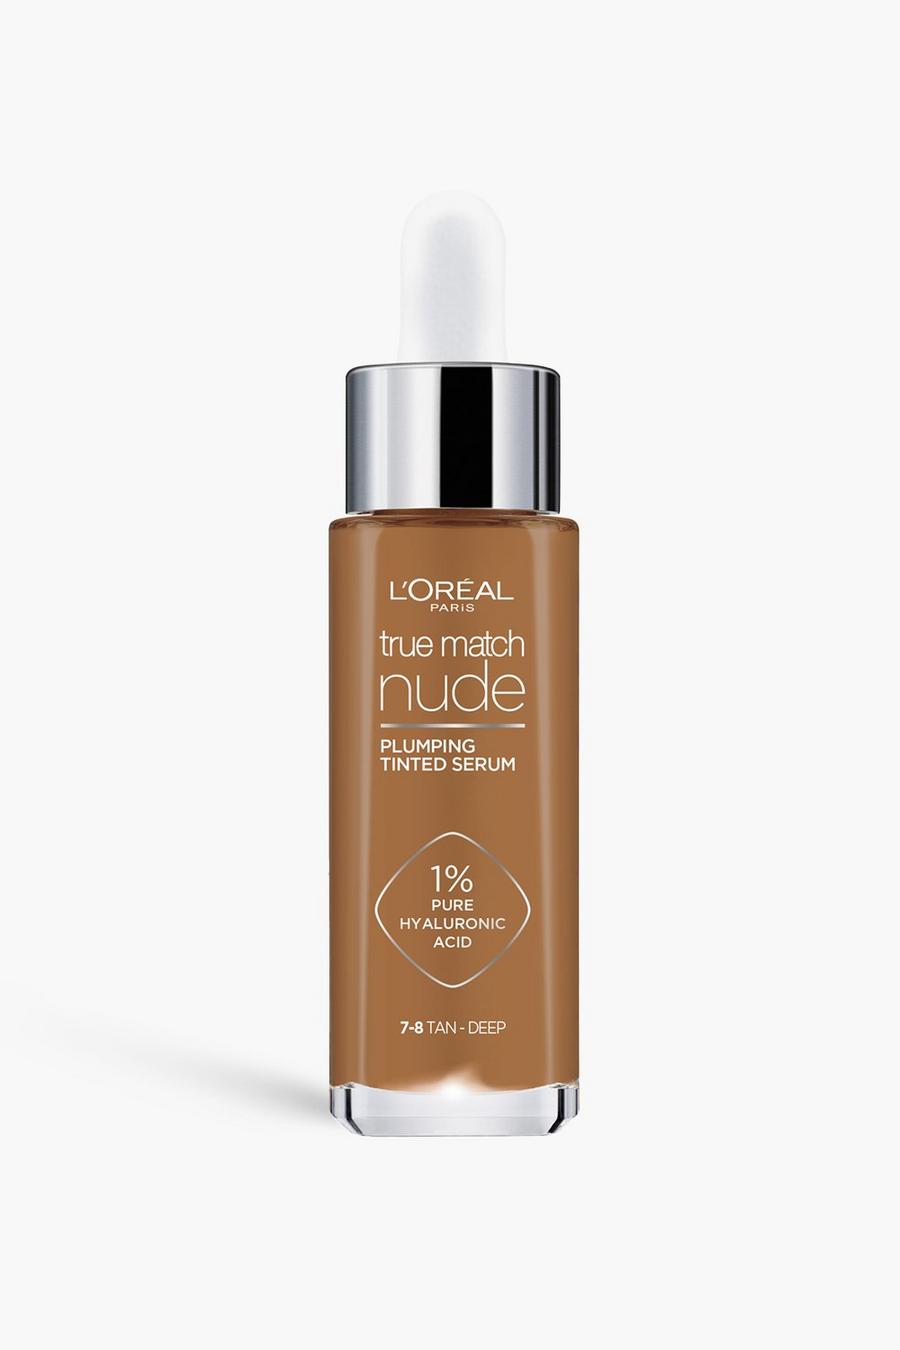 L'Oréal Paris - Sérum teinté repulpant - Accord Parfait 6-7, Tan brown